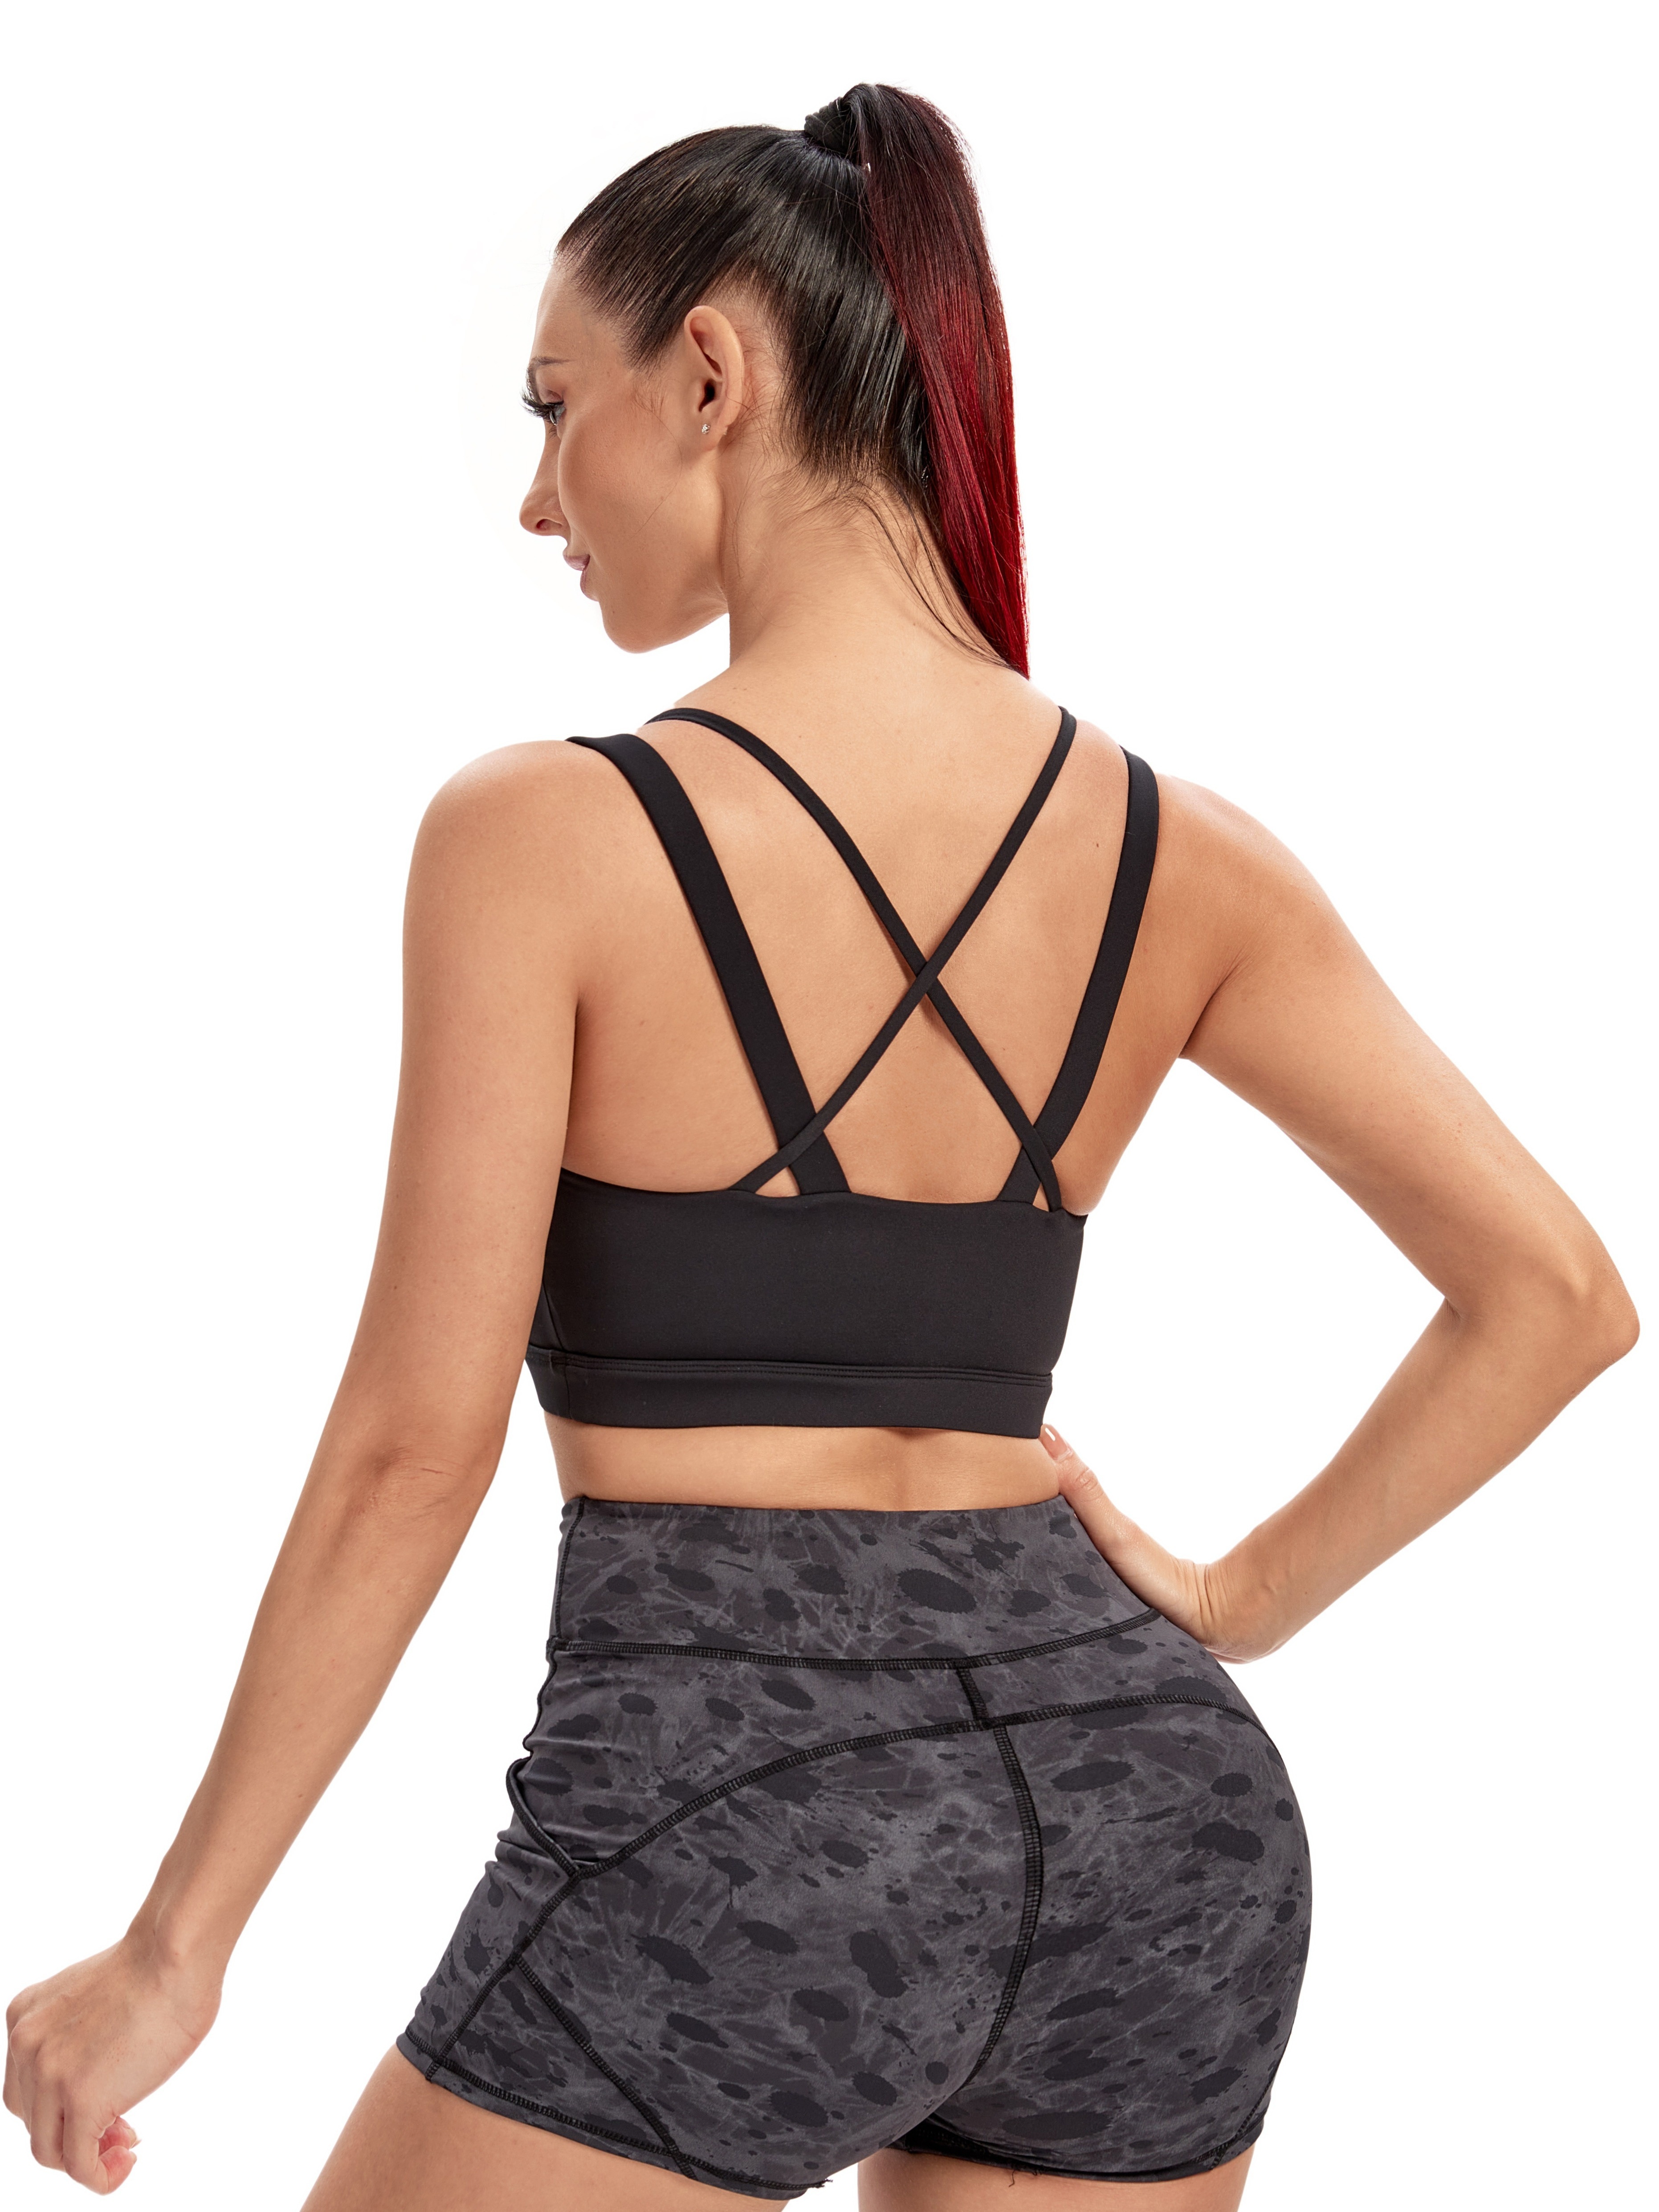 Women Shockproof Wireless Lace Bra Breathable Back Cross Yoga